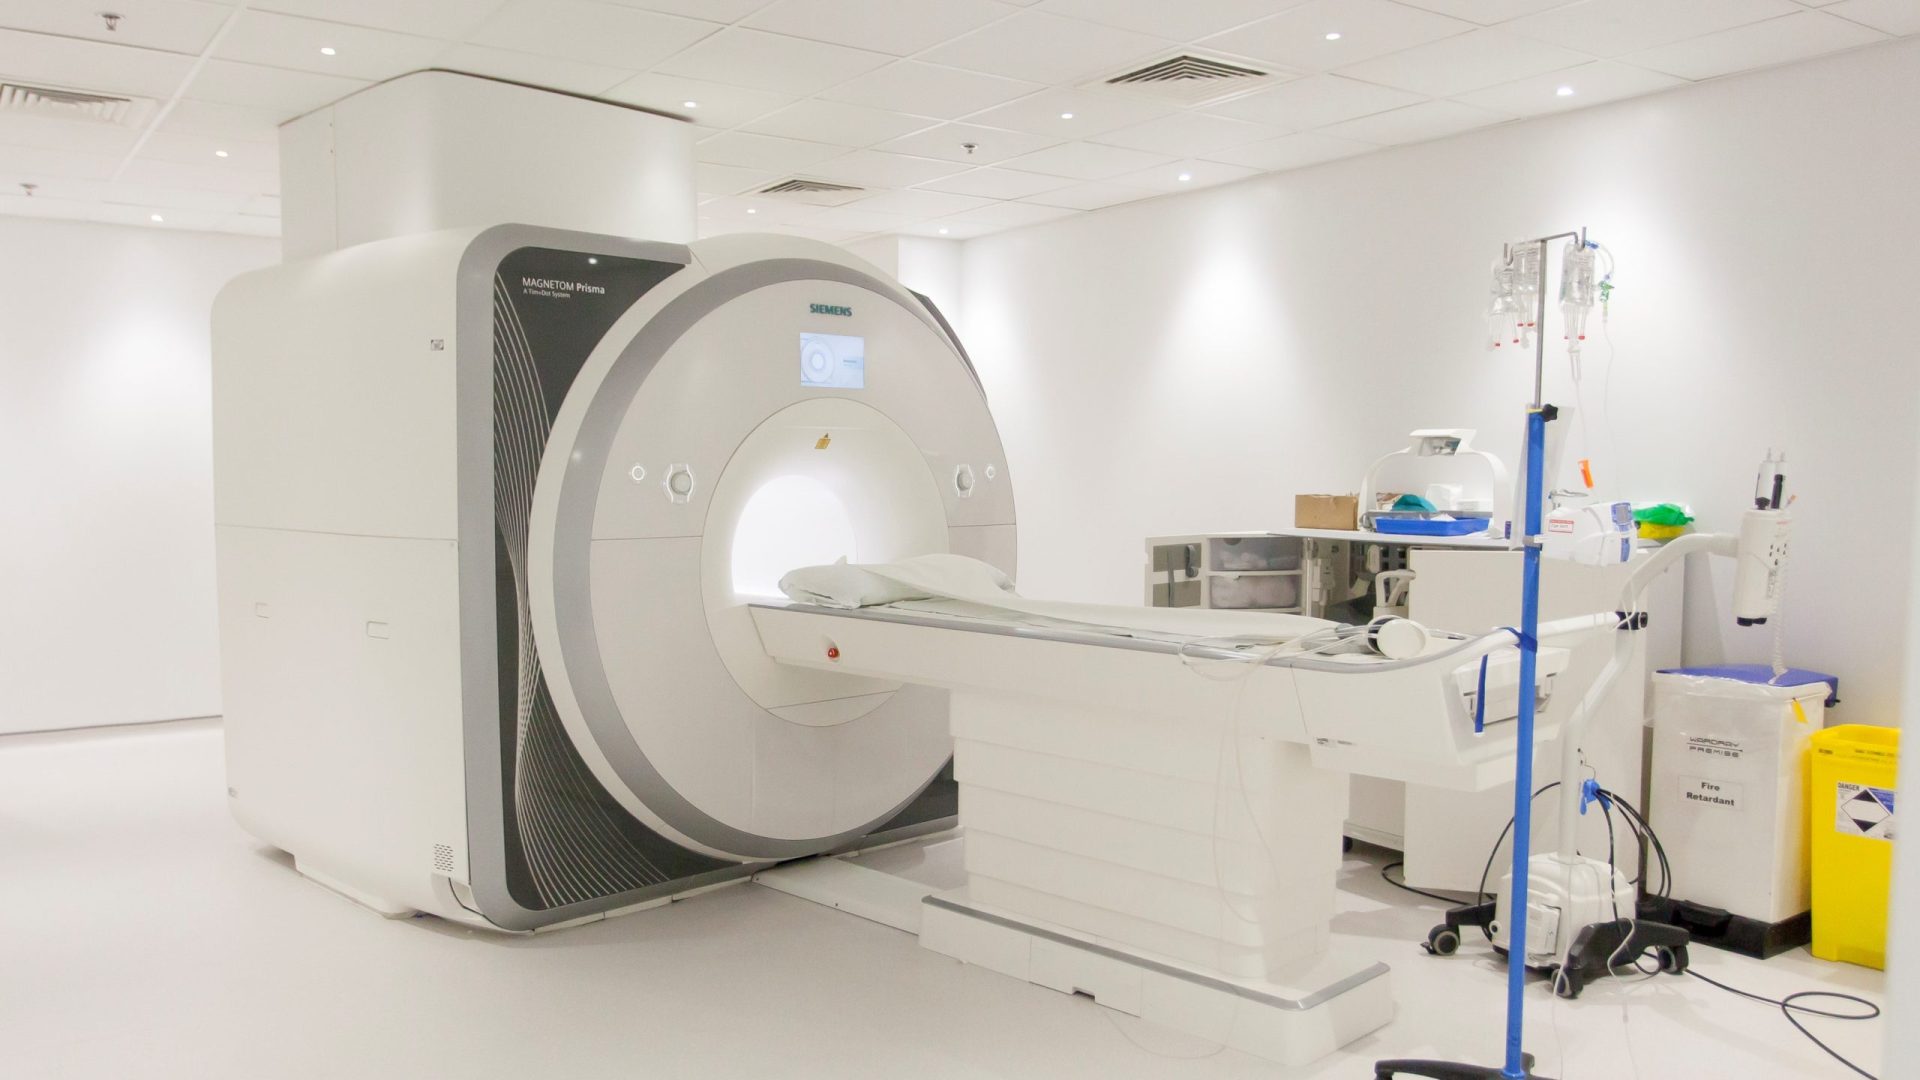 Barts Heart Centre MRI